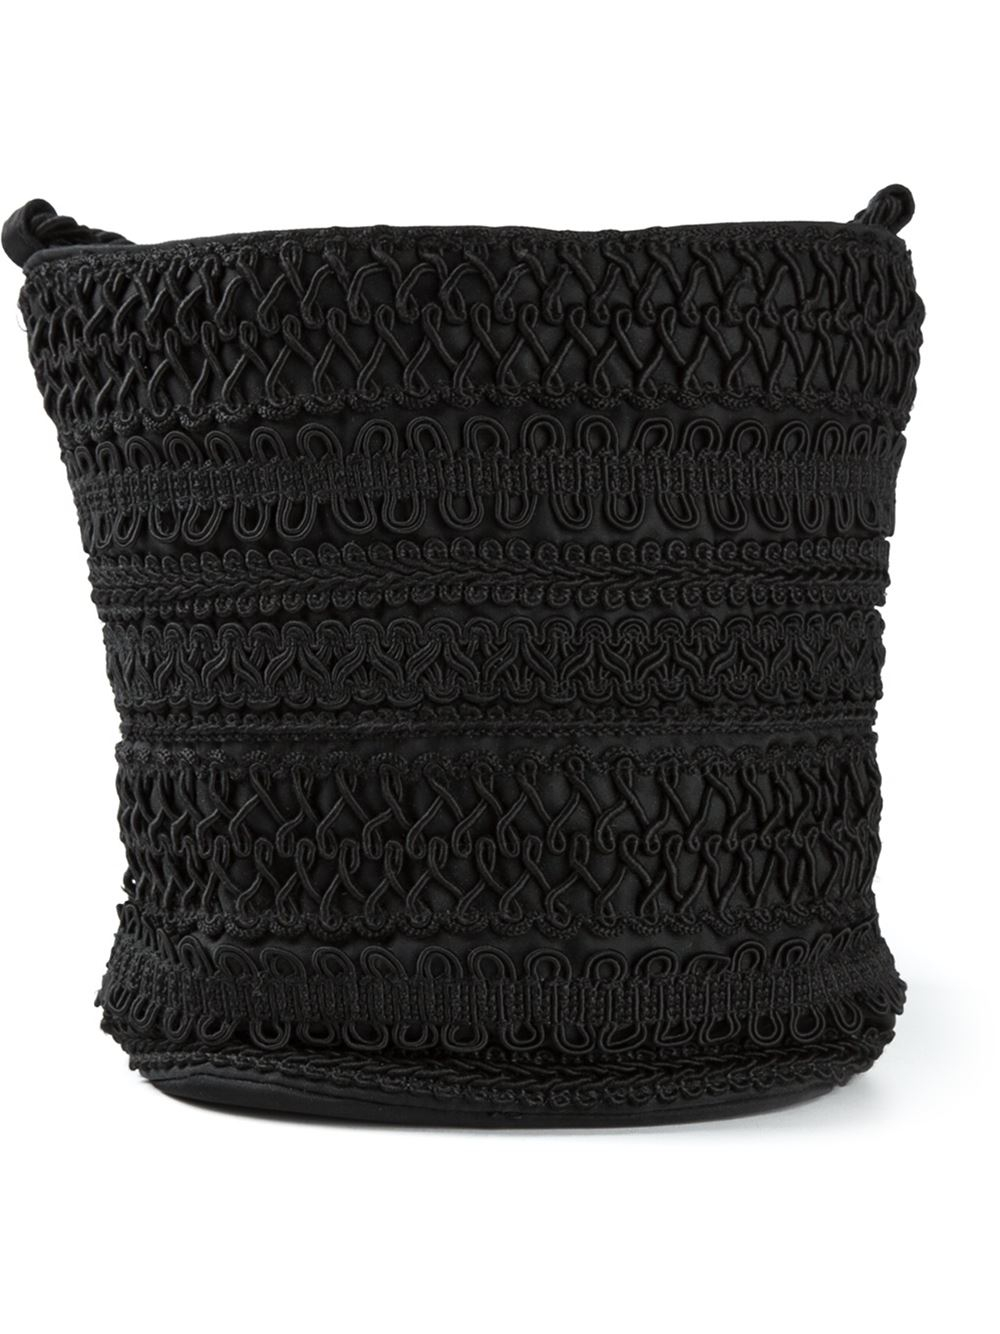 Prada Braid Bag in Black | Lyst  